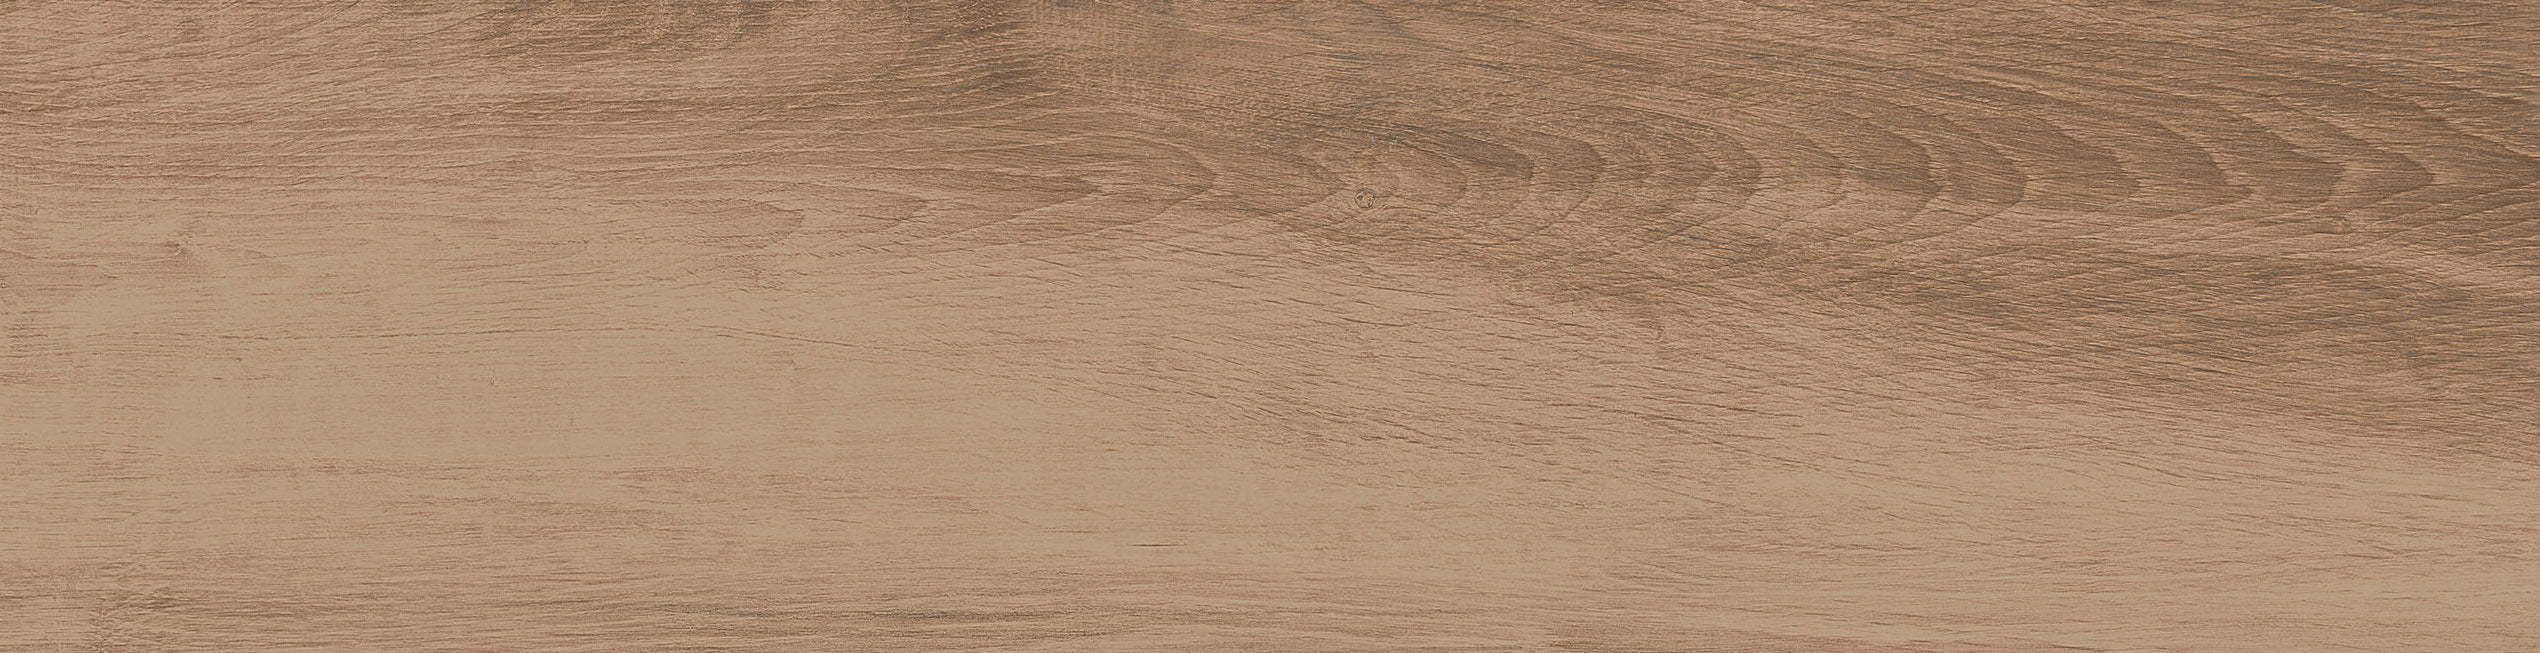 Stiwood - Arredamenti legno grezzo